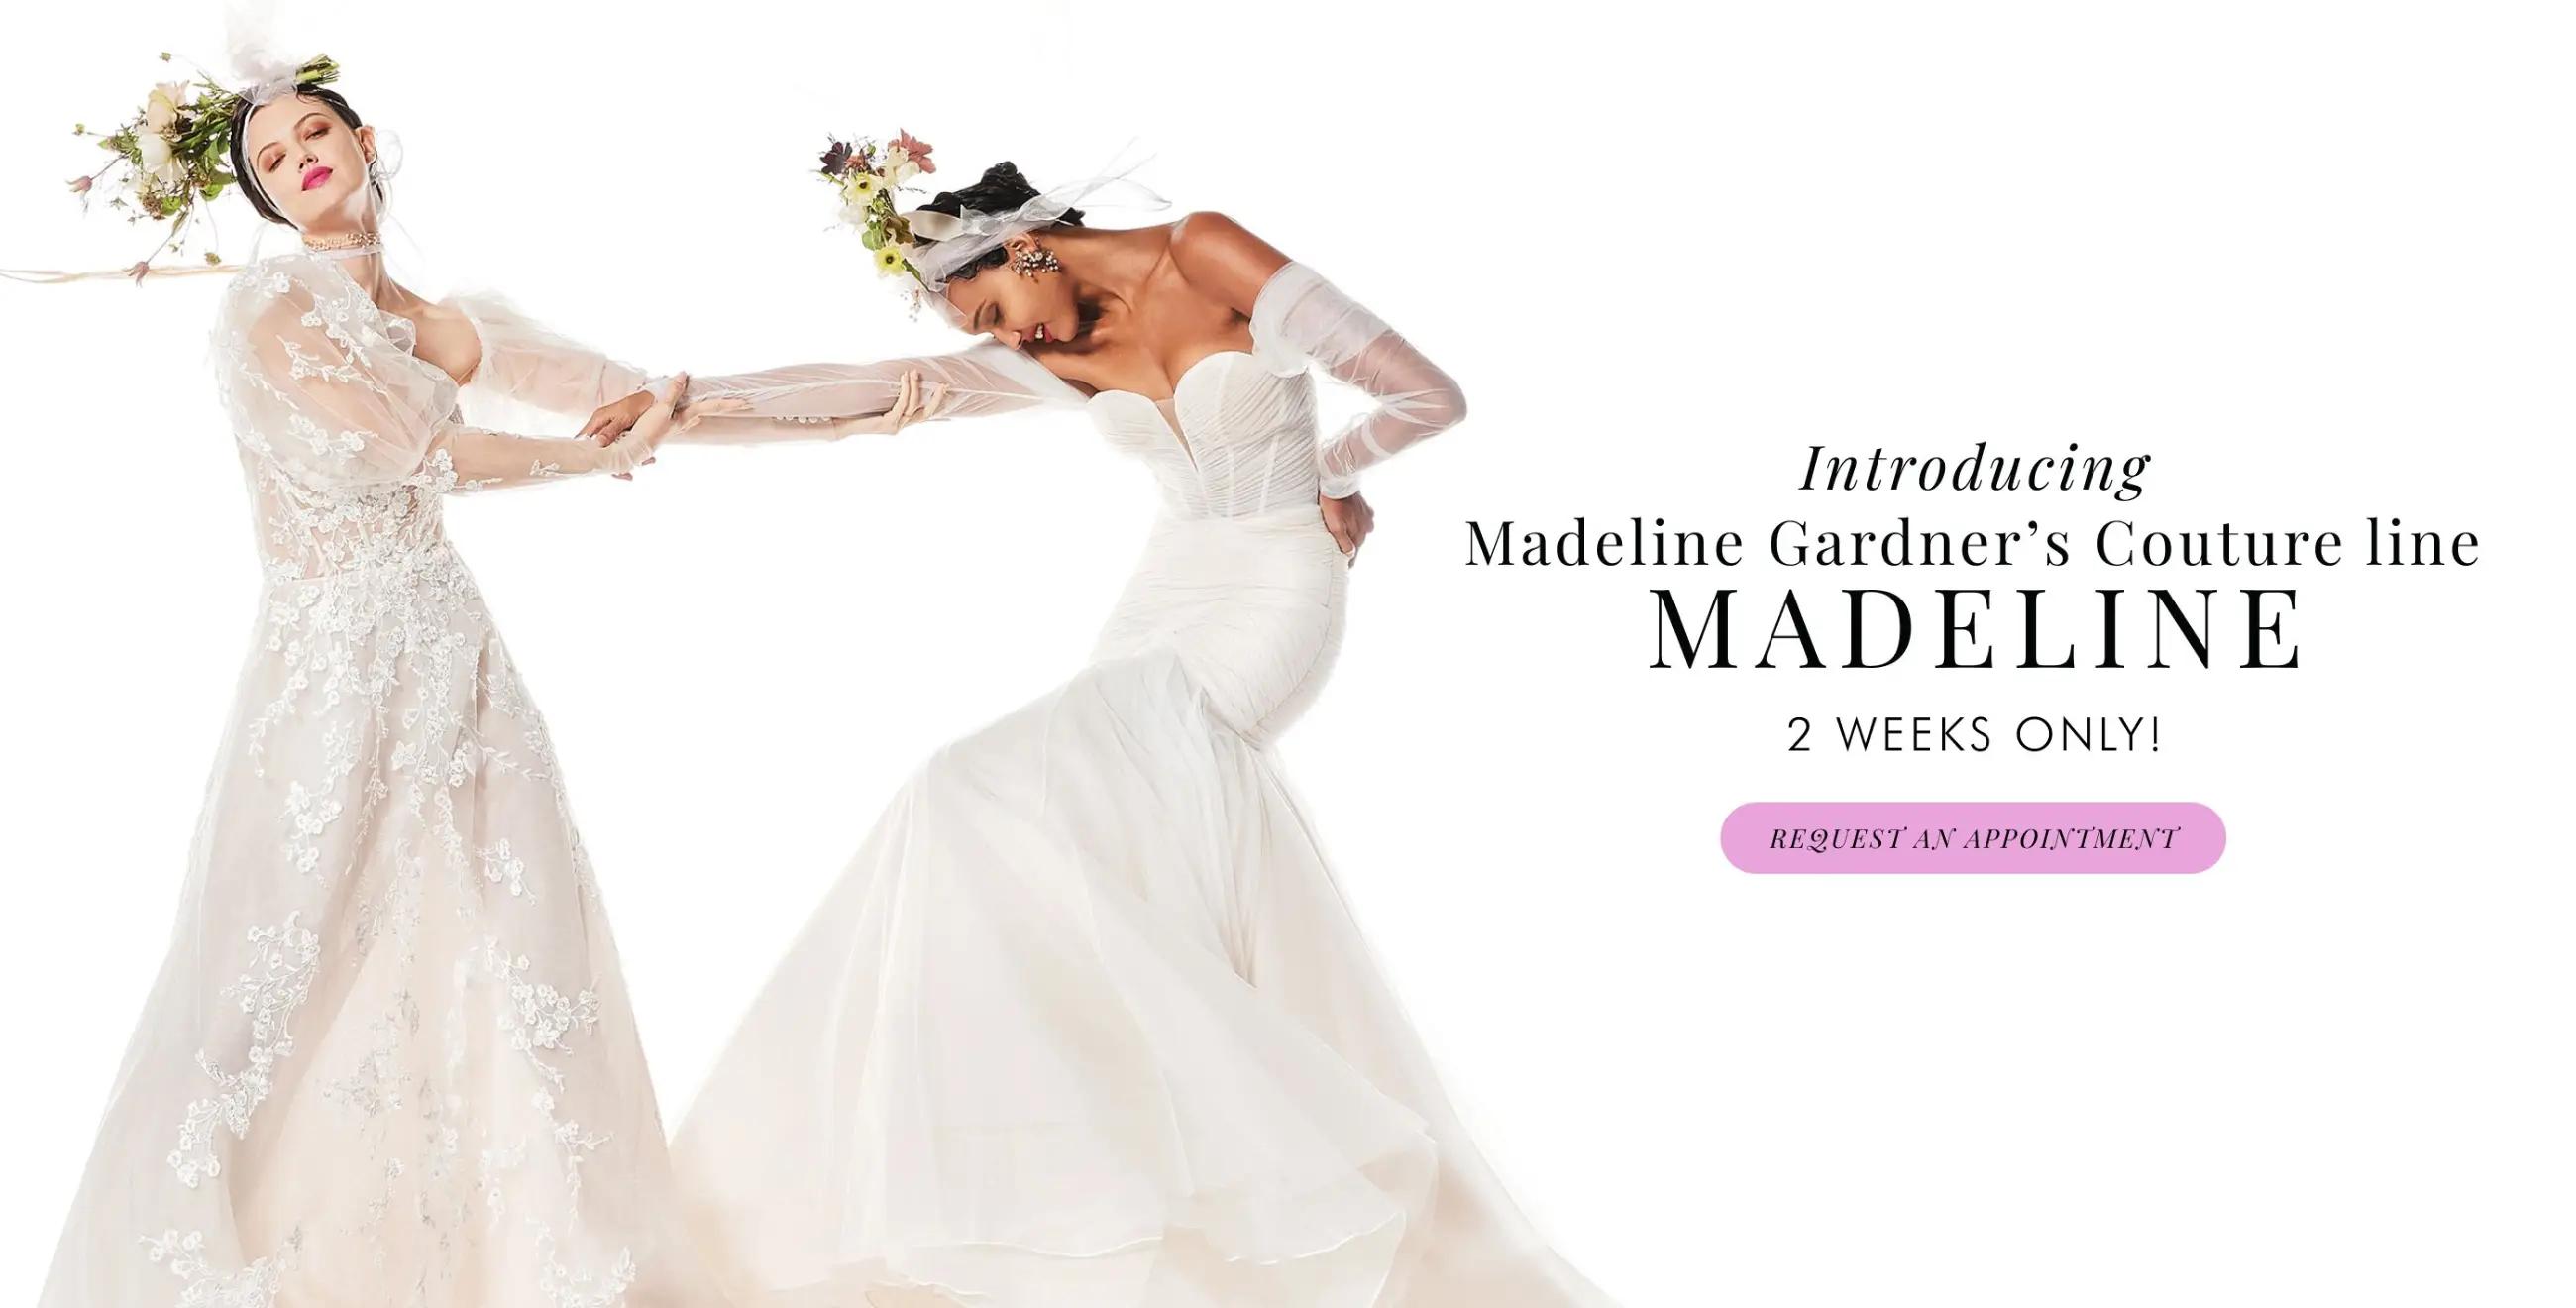 Madeline Gardner Couture line - Madeline at Trudys Brides